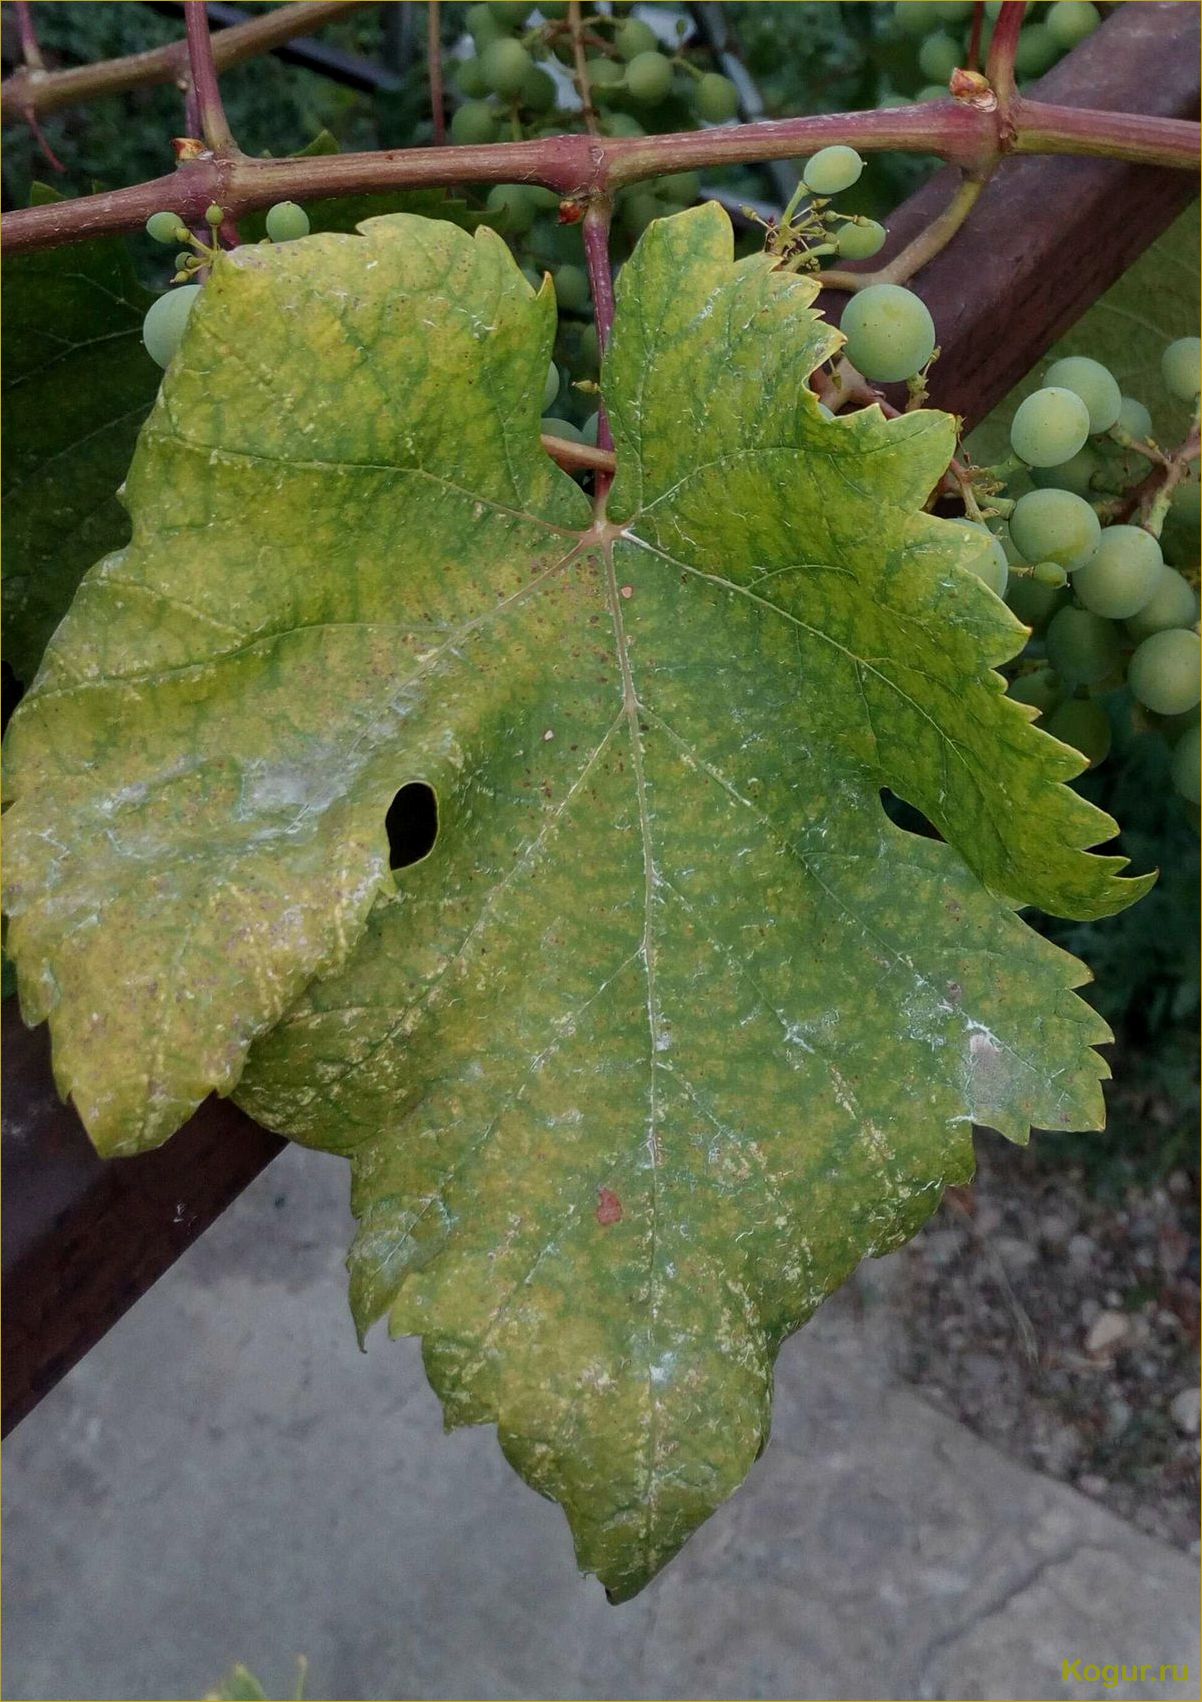 Определение и преодоление фото-болезней винограда